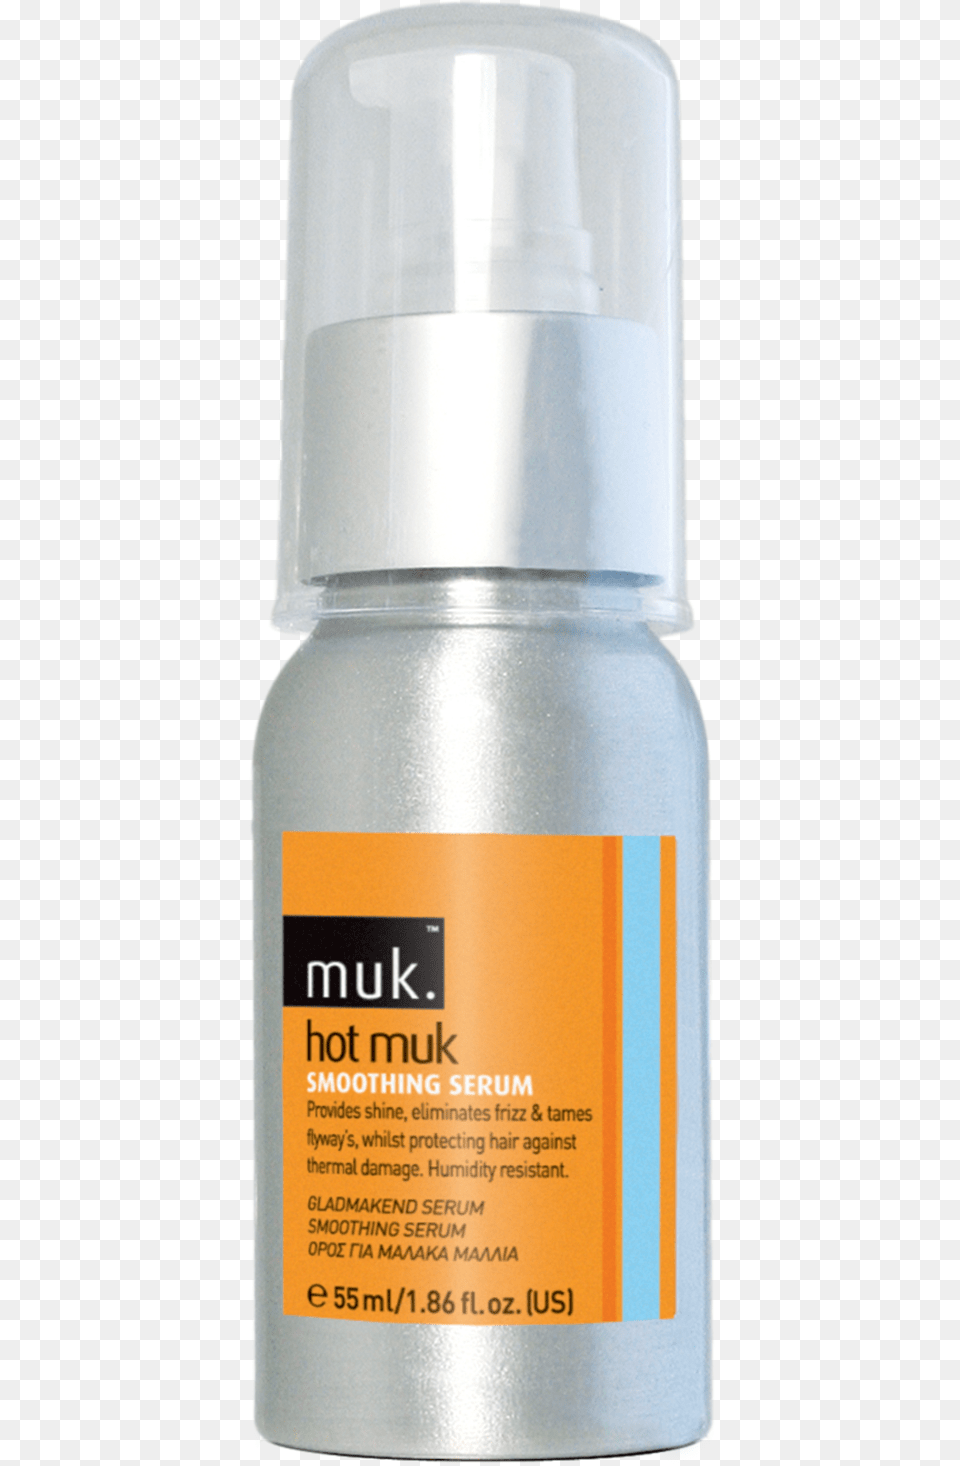 Muk Hot Muk Smoothing Serum, Cosmetics, Bottle, Perfume, Deodorant Free Transparent Png